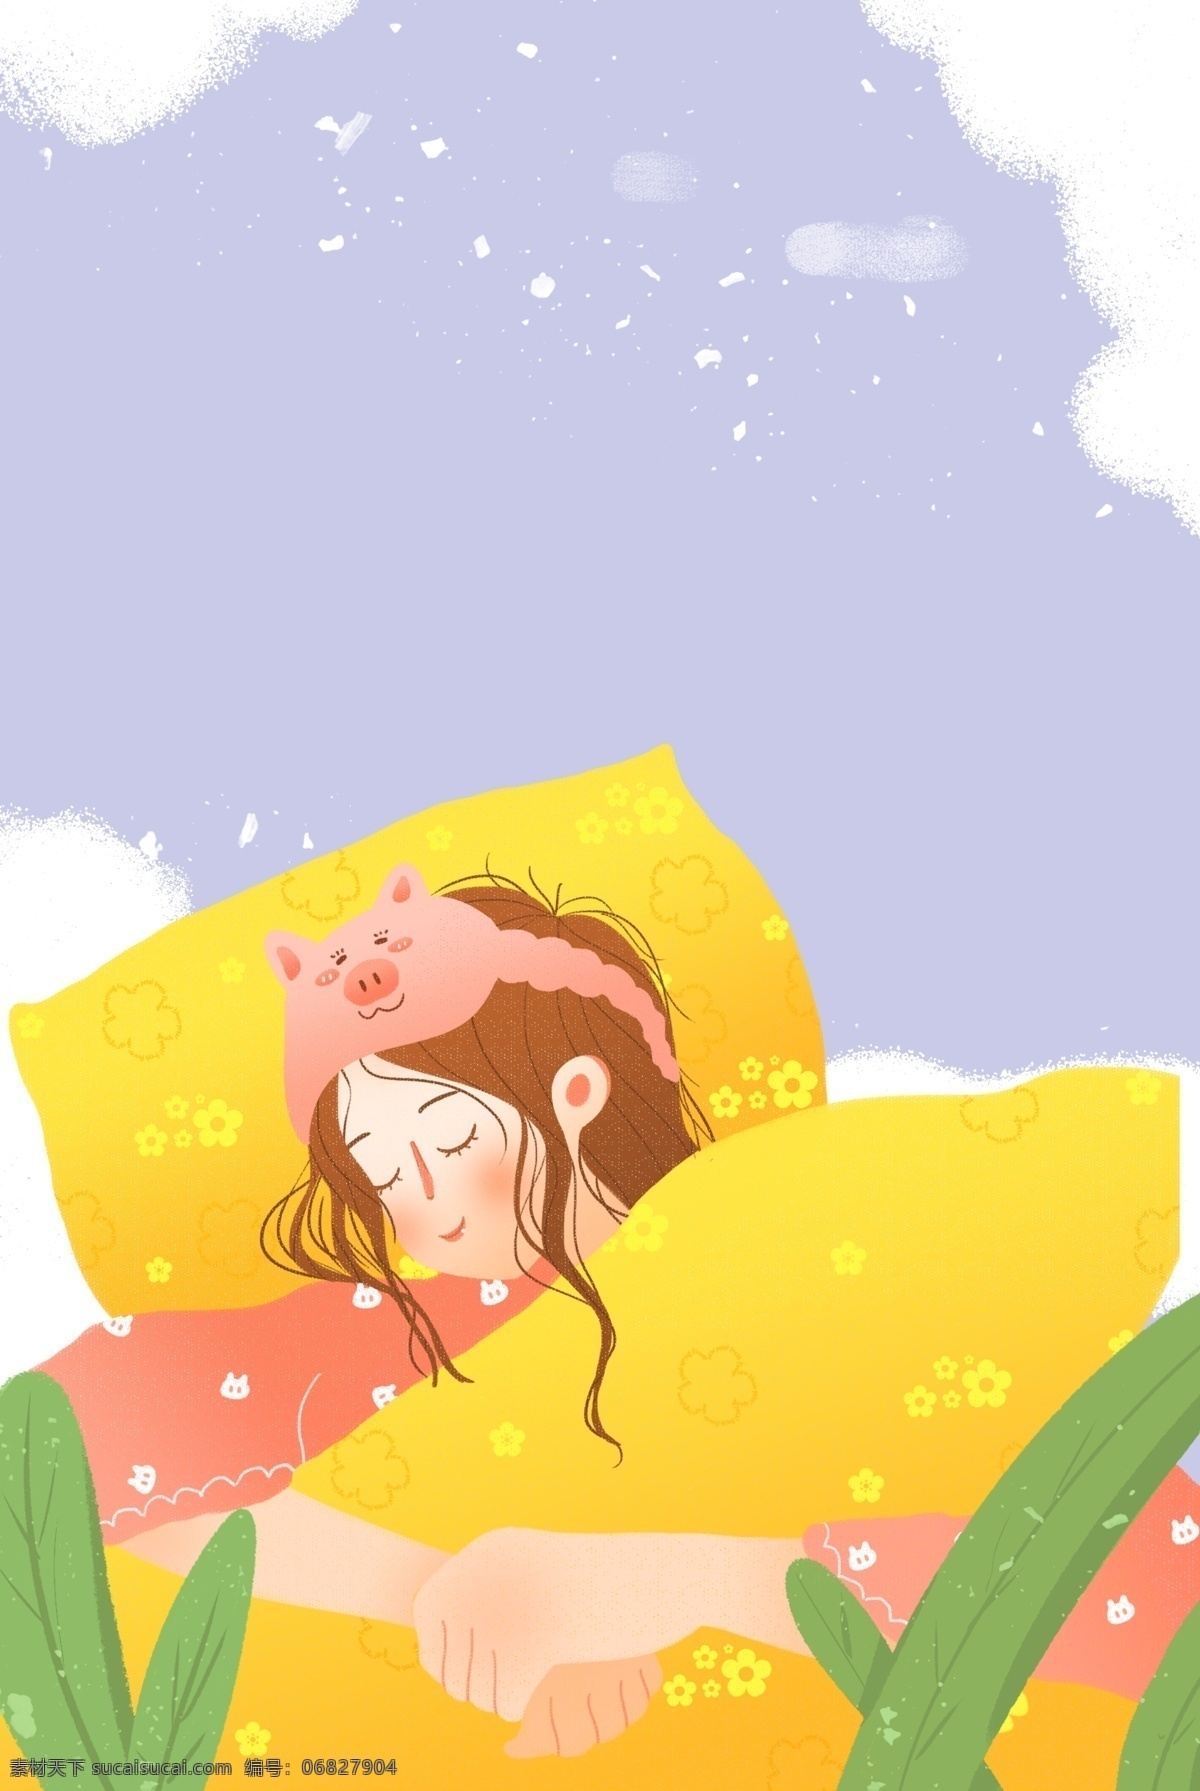 世界 睡眠 日 美梦 女孩 插画 世界睡眠日 床上用品 植物 唯美 插画风 促销海报